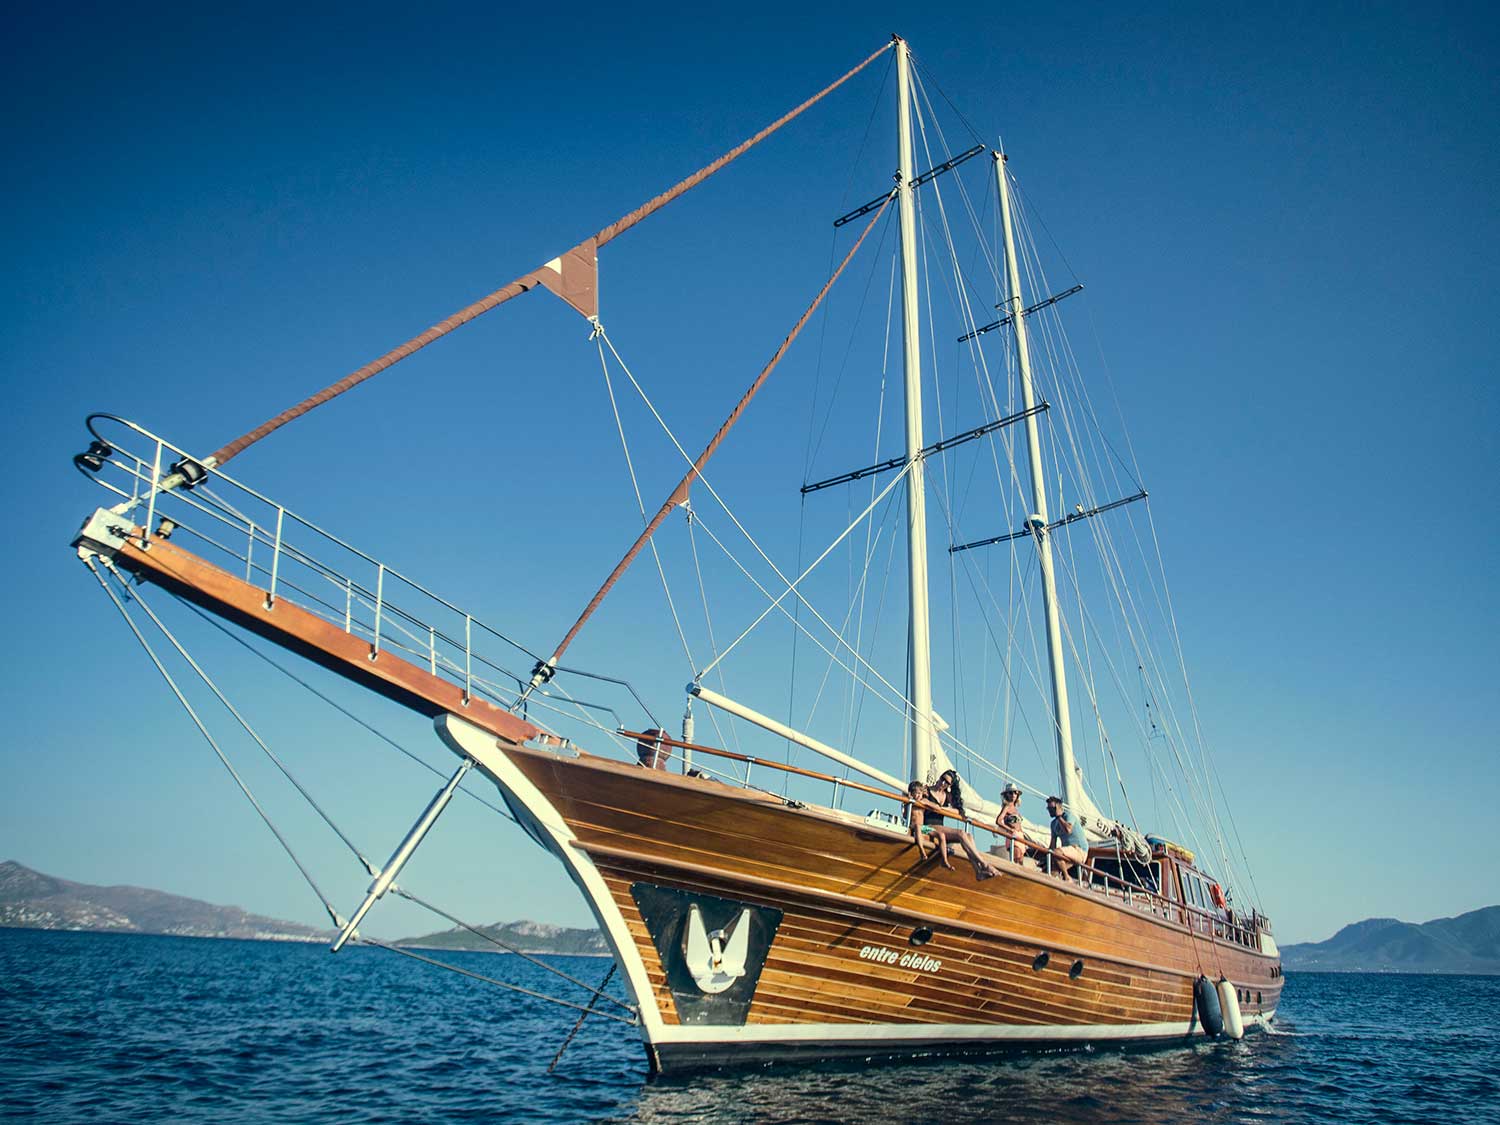 A schooner provides luxurious amenities